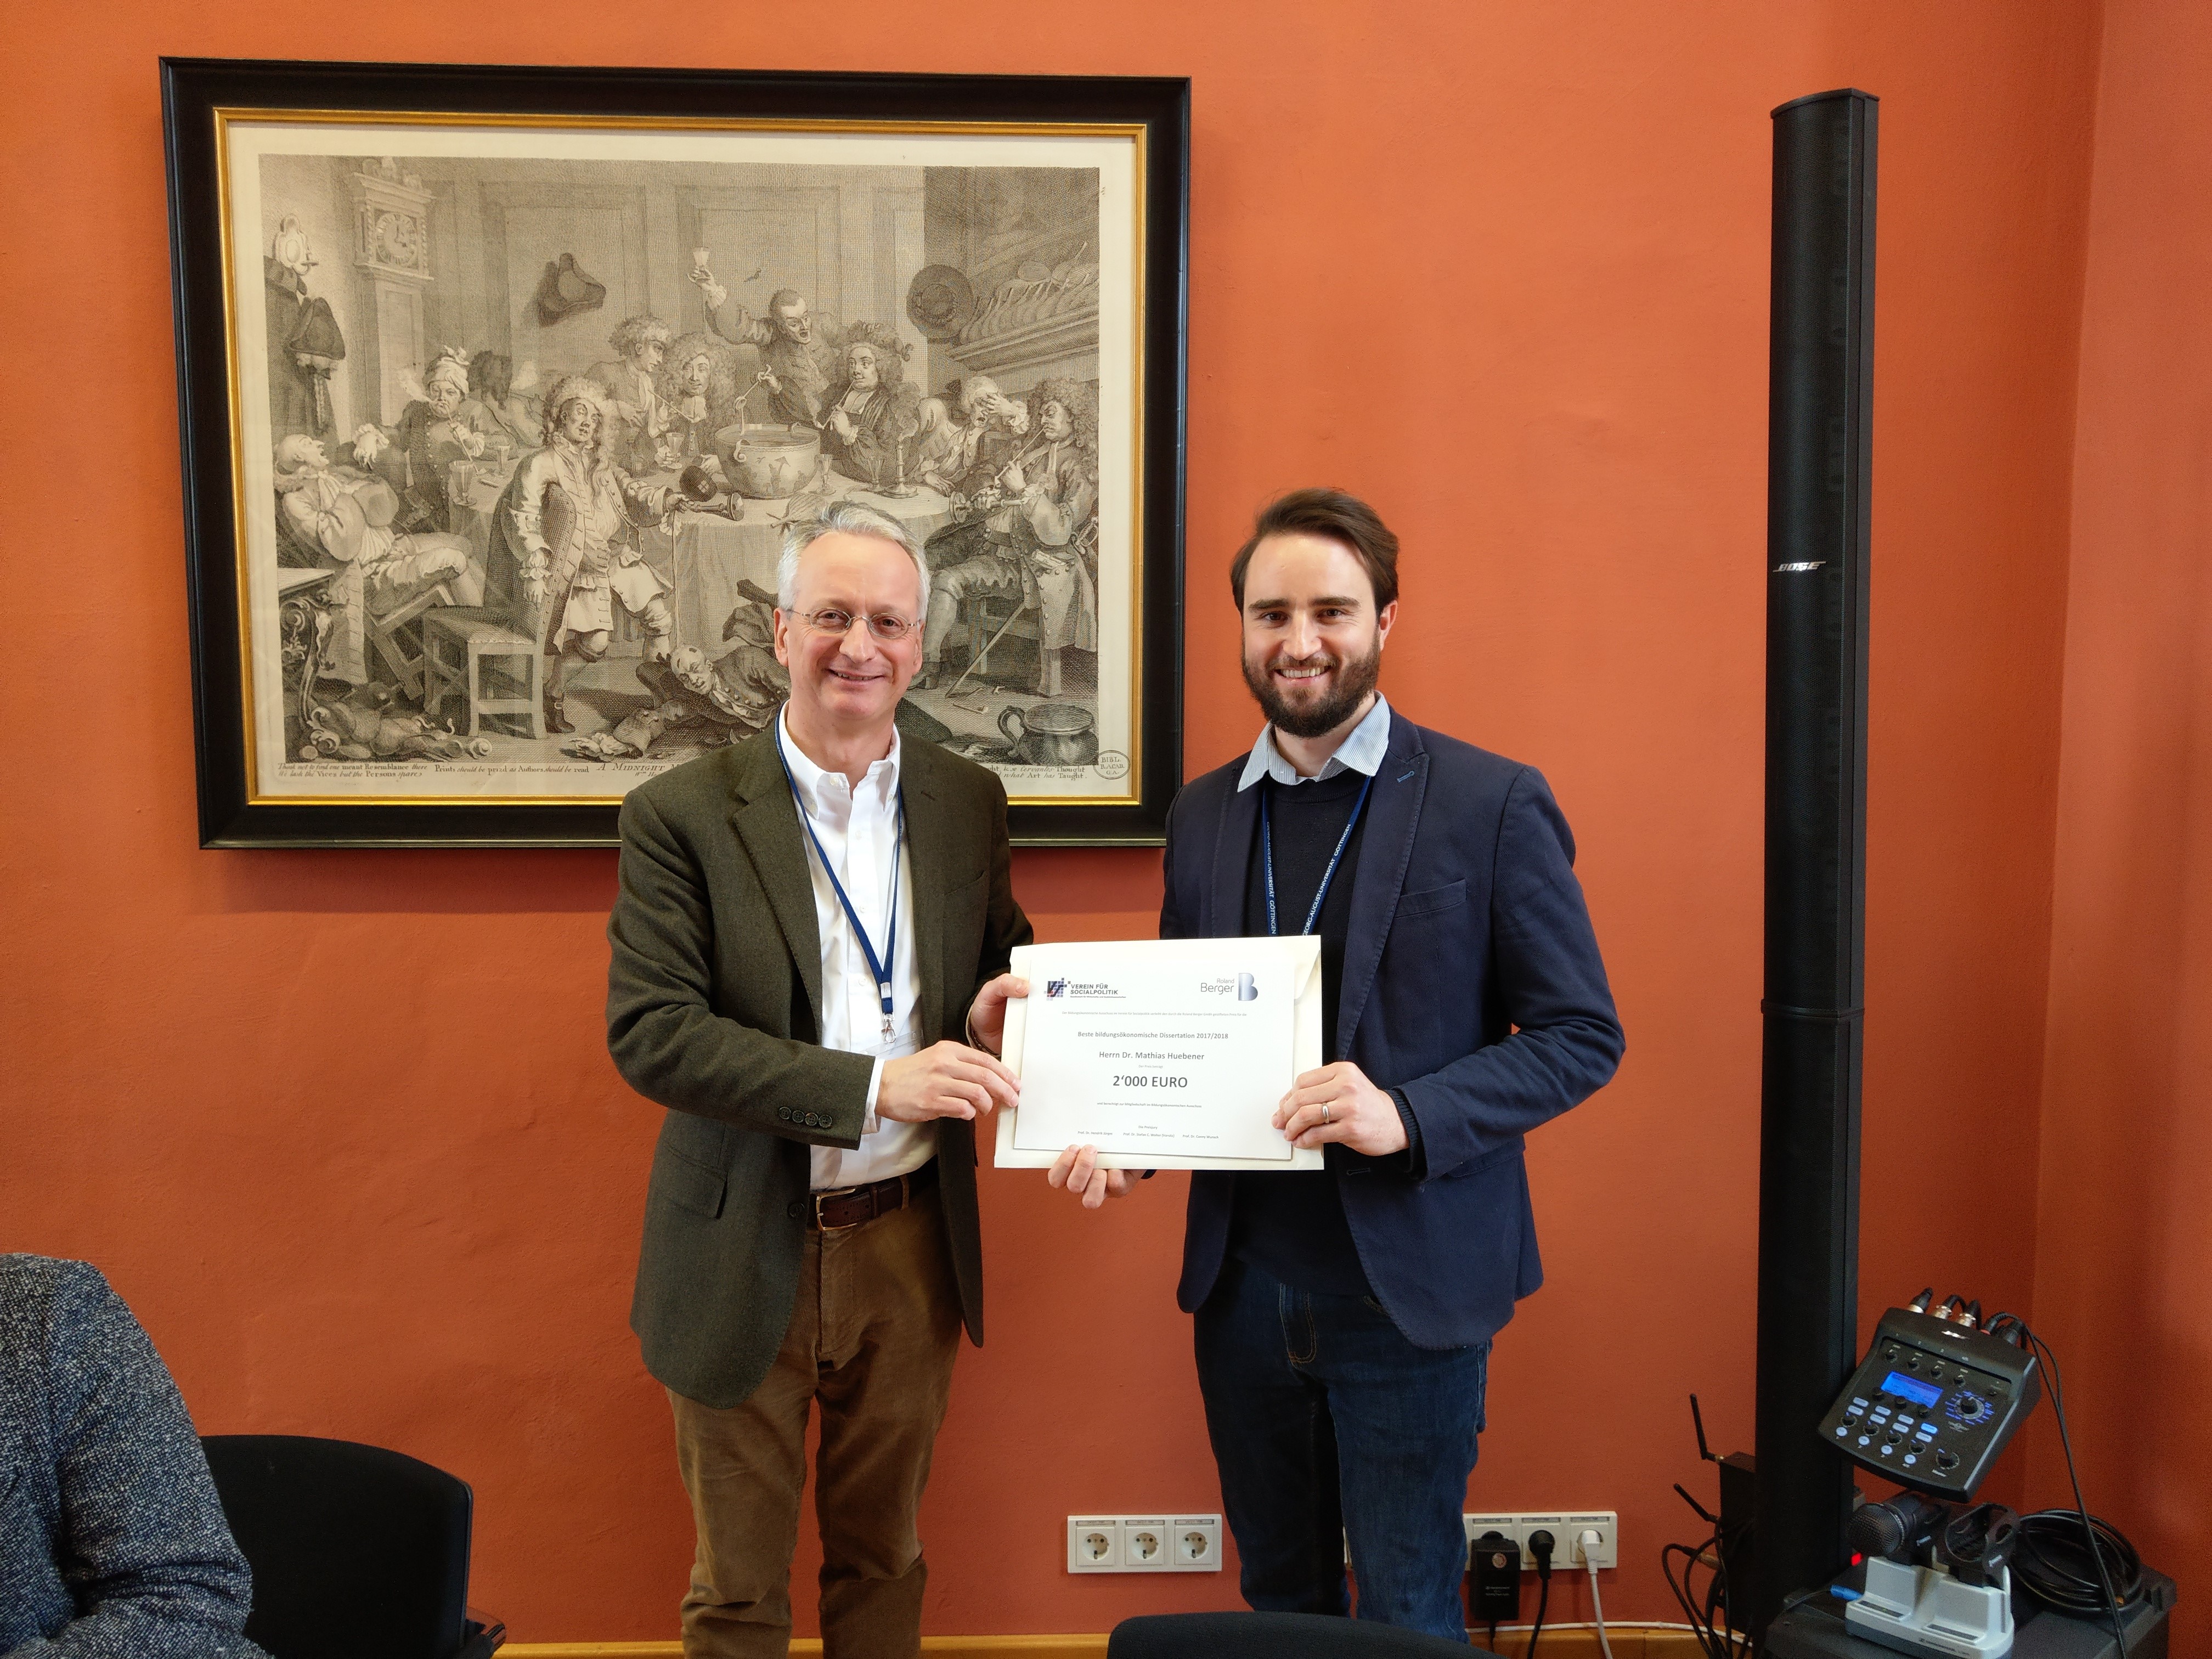 Mathias Hübener (rechts) nimmt die Urkunde zum Preis für die beste bildungsökonomische Dissertation 2017/18 von dem Vorsitzenden des Bildungsökonomischen Ausschusses, Stefan Wolter, entgegen.